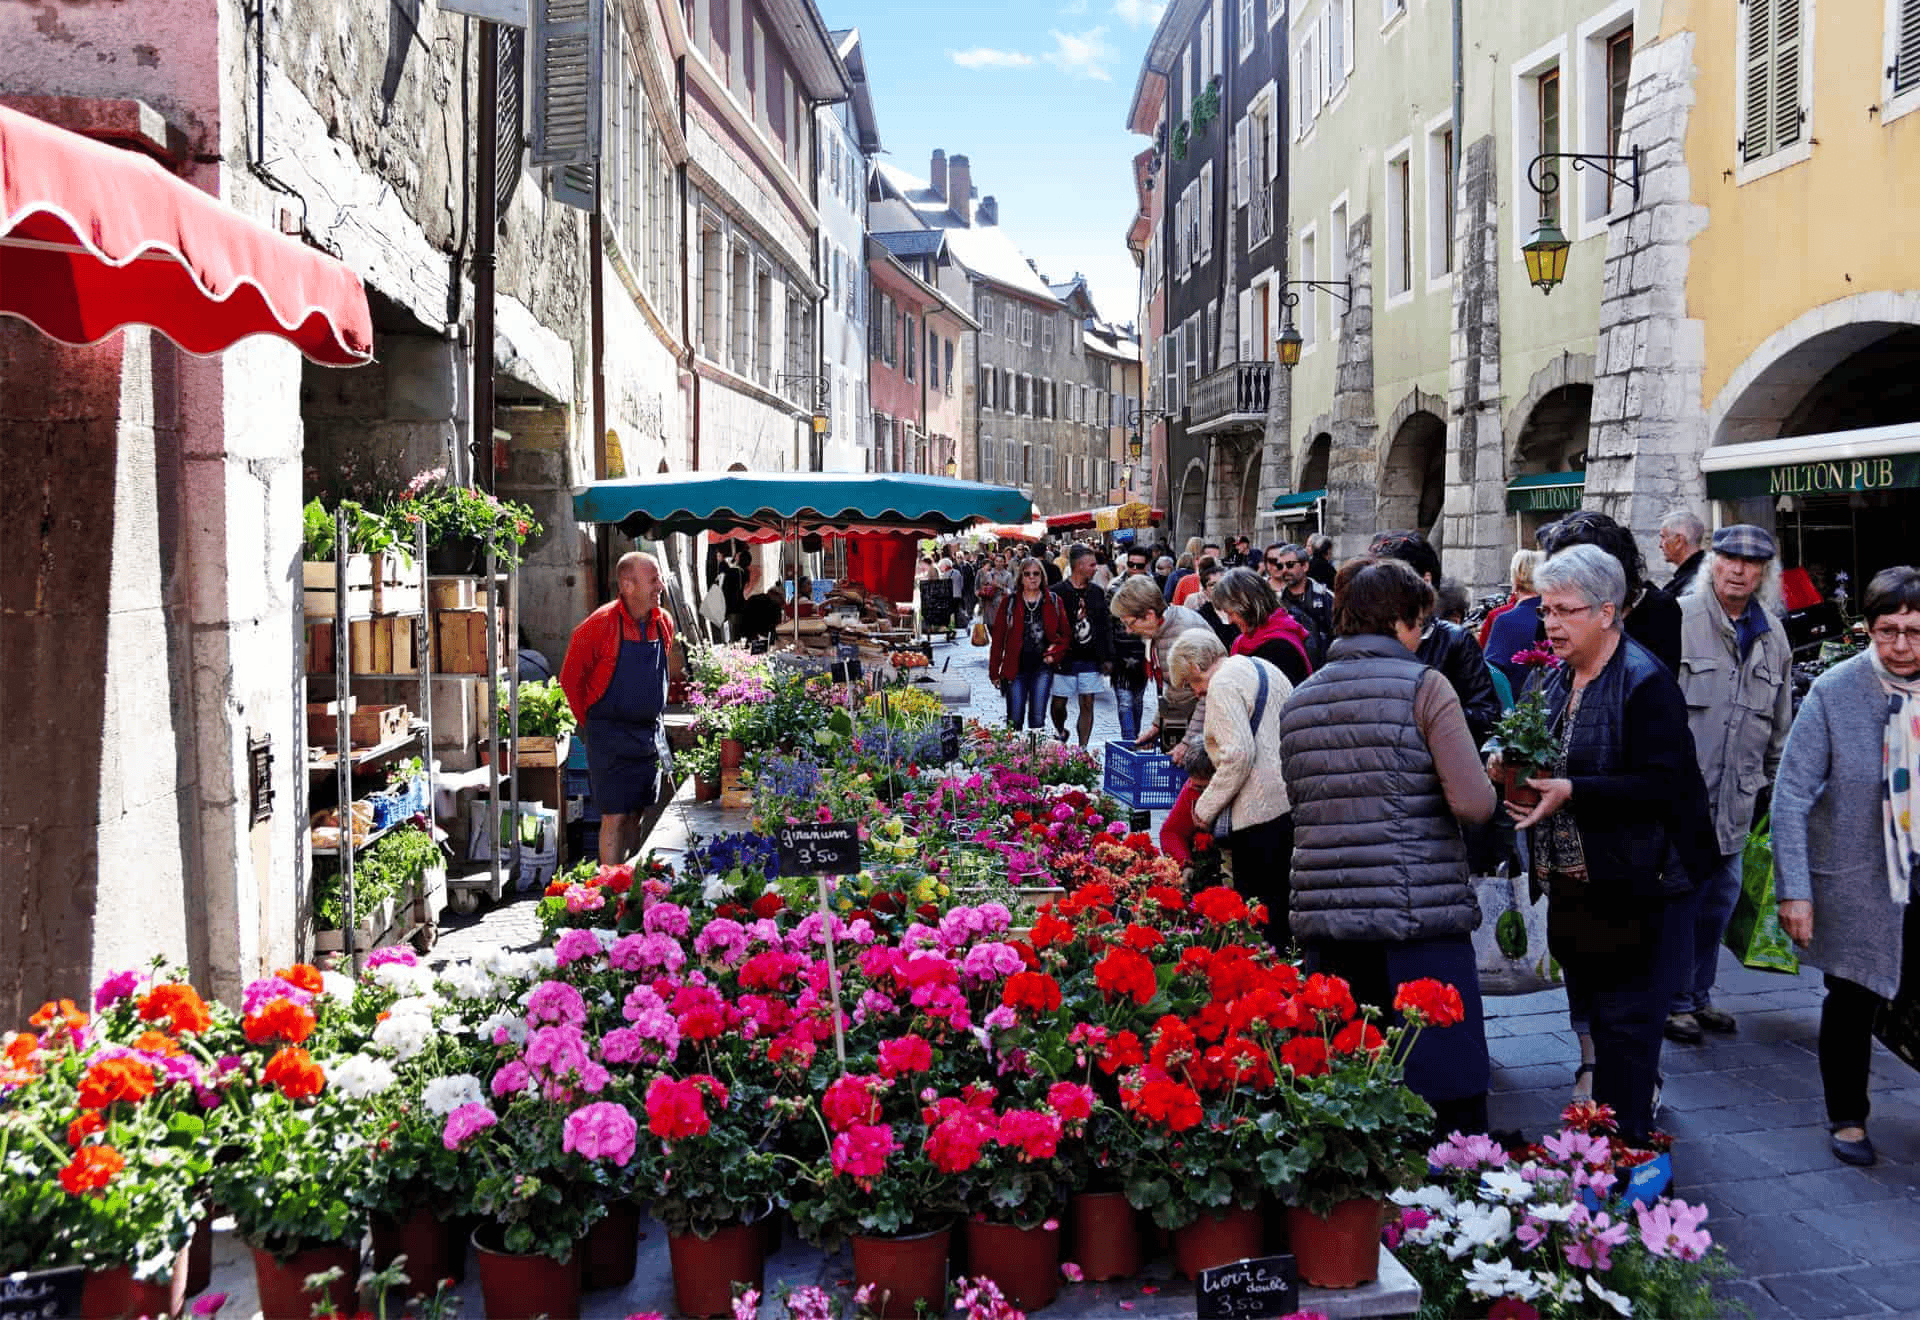 Le marché de la vieille ville d'Annecy pour visiter Annecy en 1 jour © OVO Network